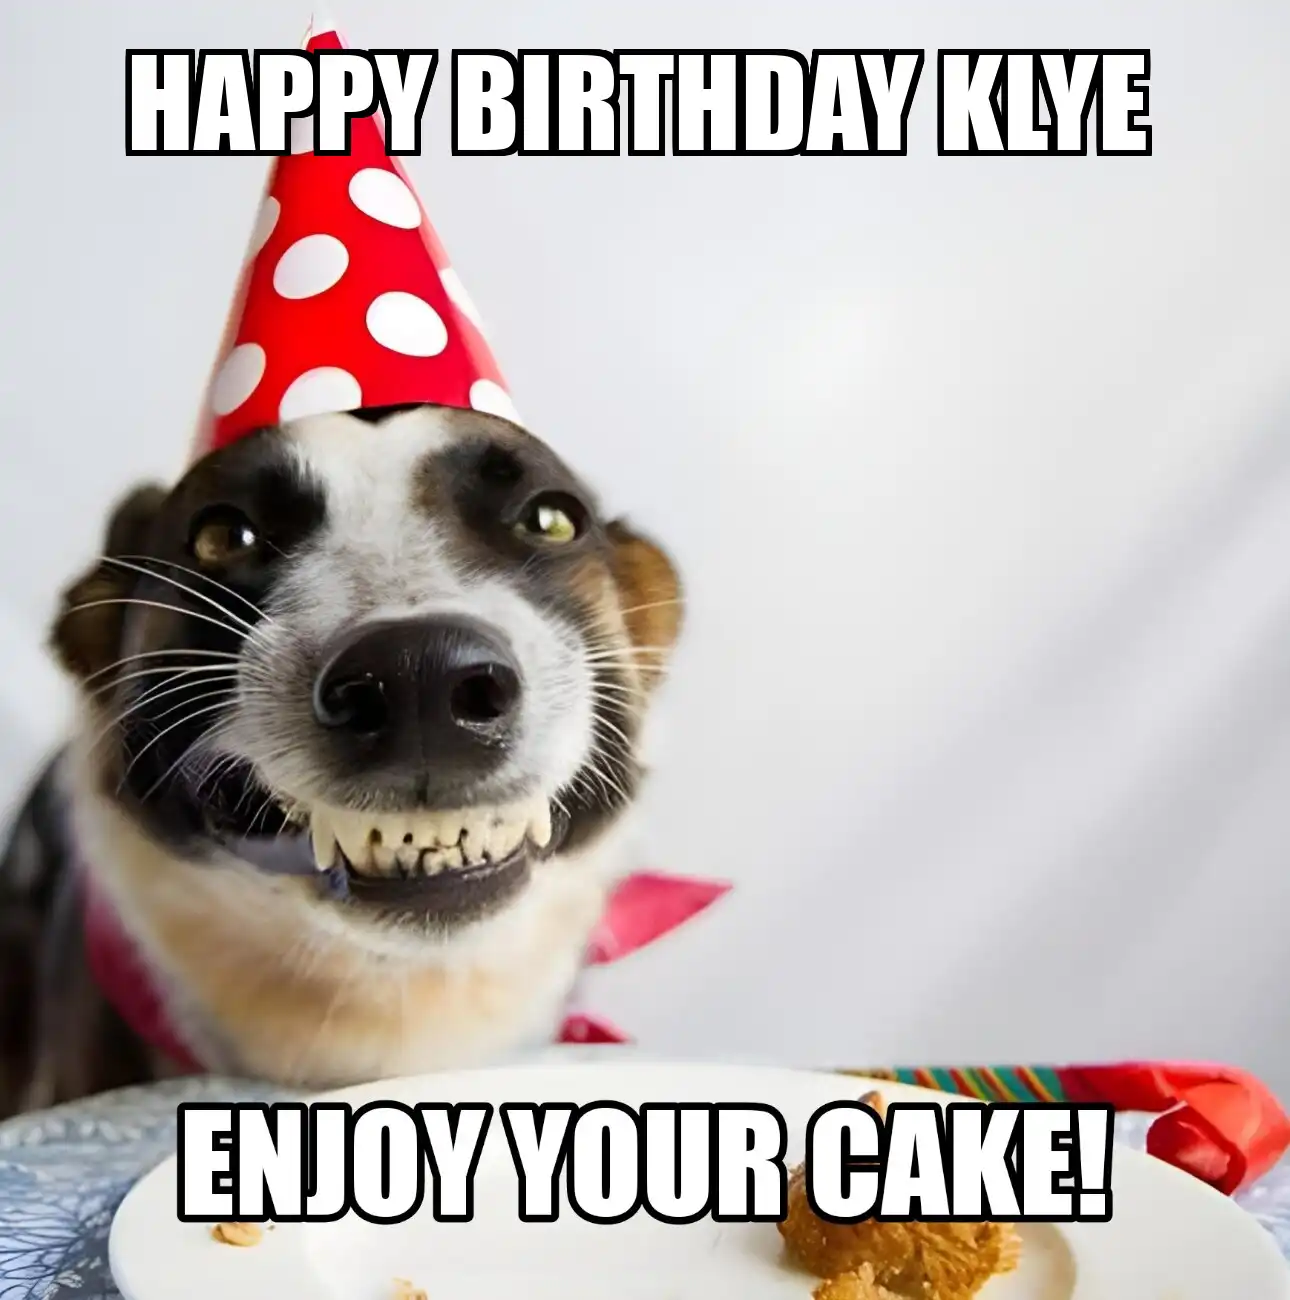 Happy Birthday Klye Enjoy Your Cake Dog Meme